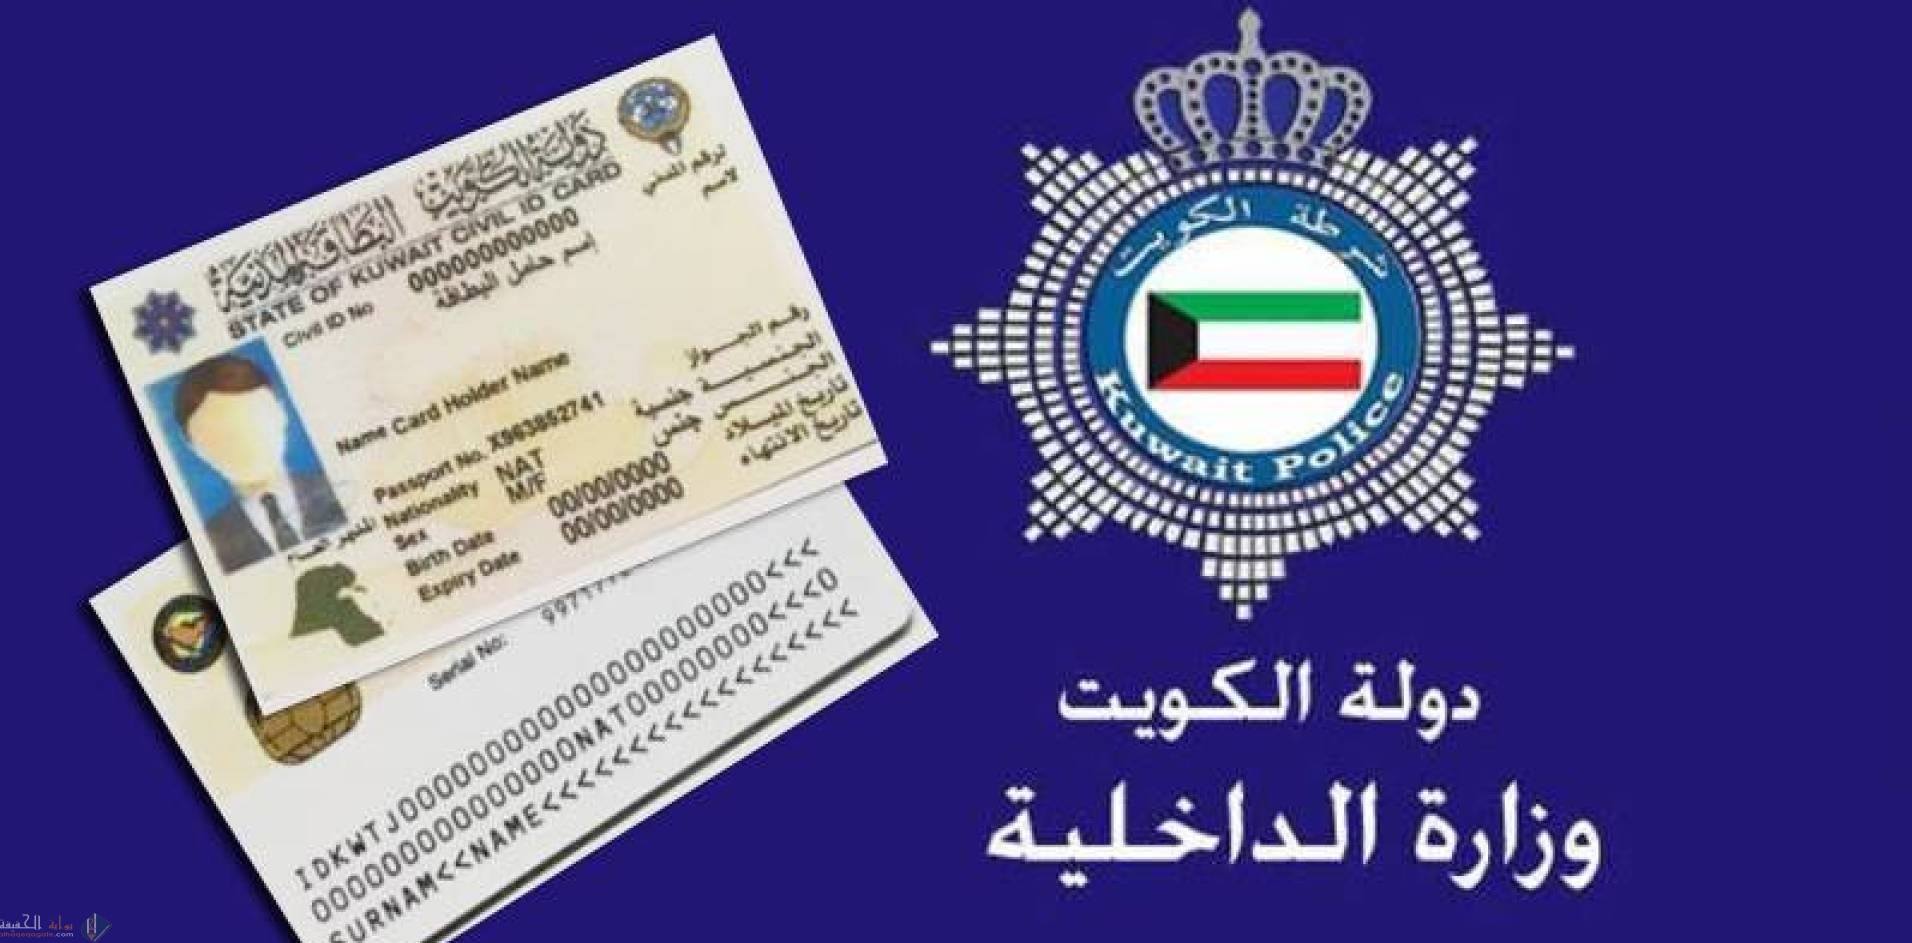 الاستعلام عن البطاقة المدنية في الكويت